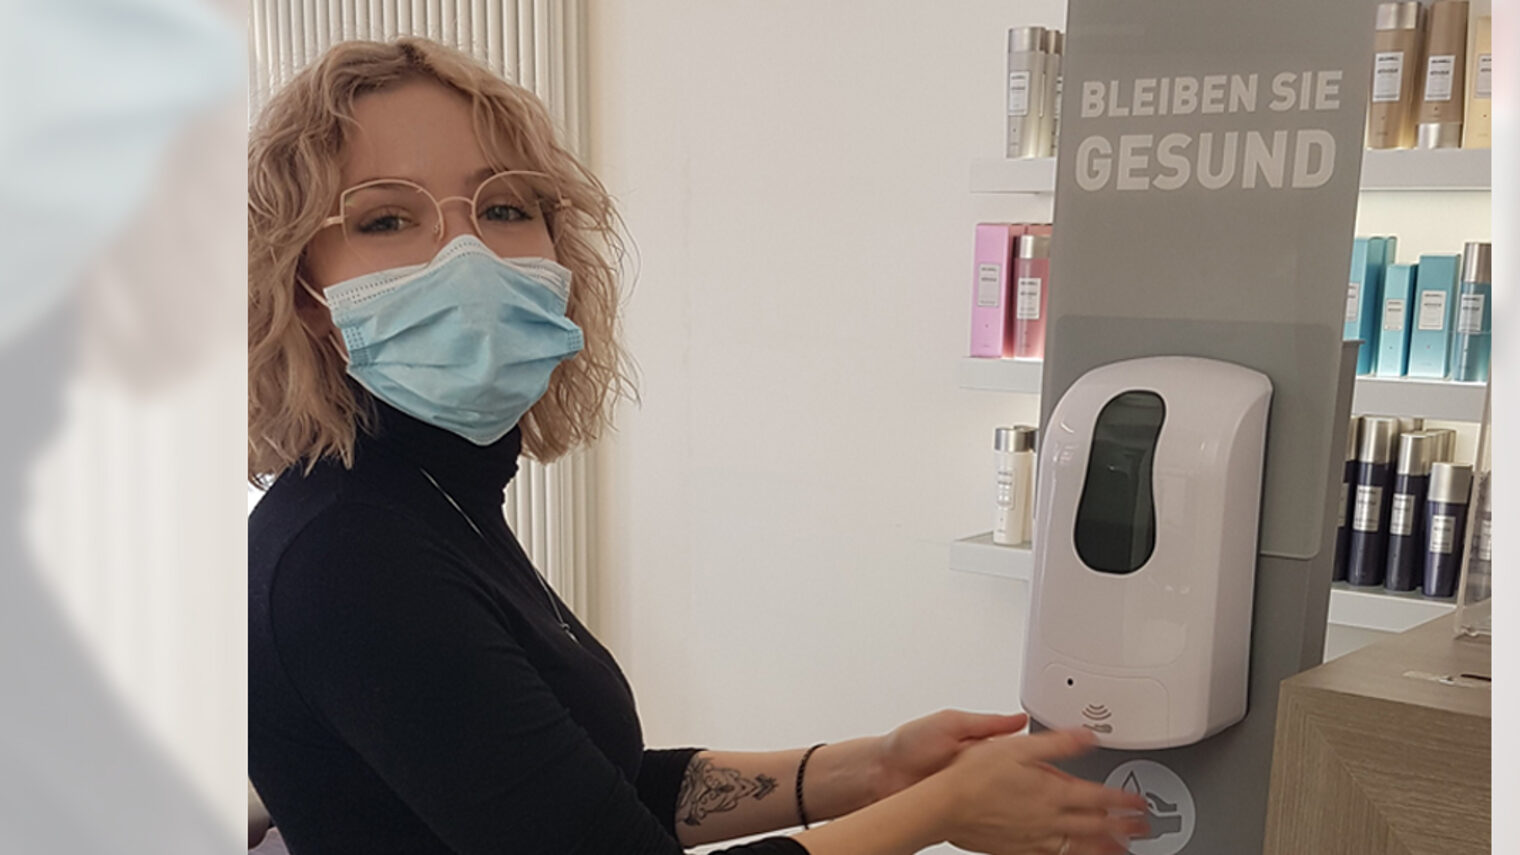 Julia Harzer mit Mundschutz betätigt Desinfektionsmittelspender in Friseursalon.